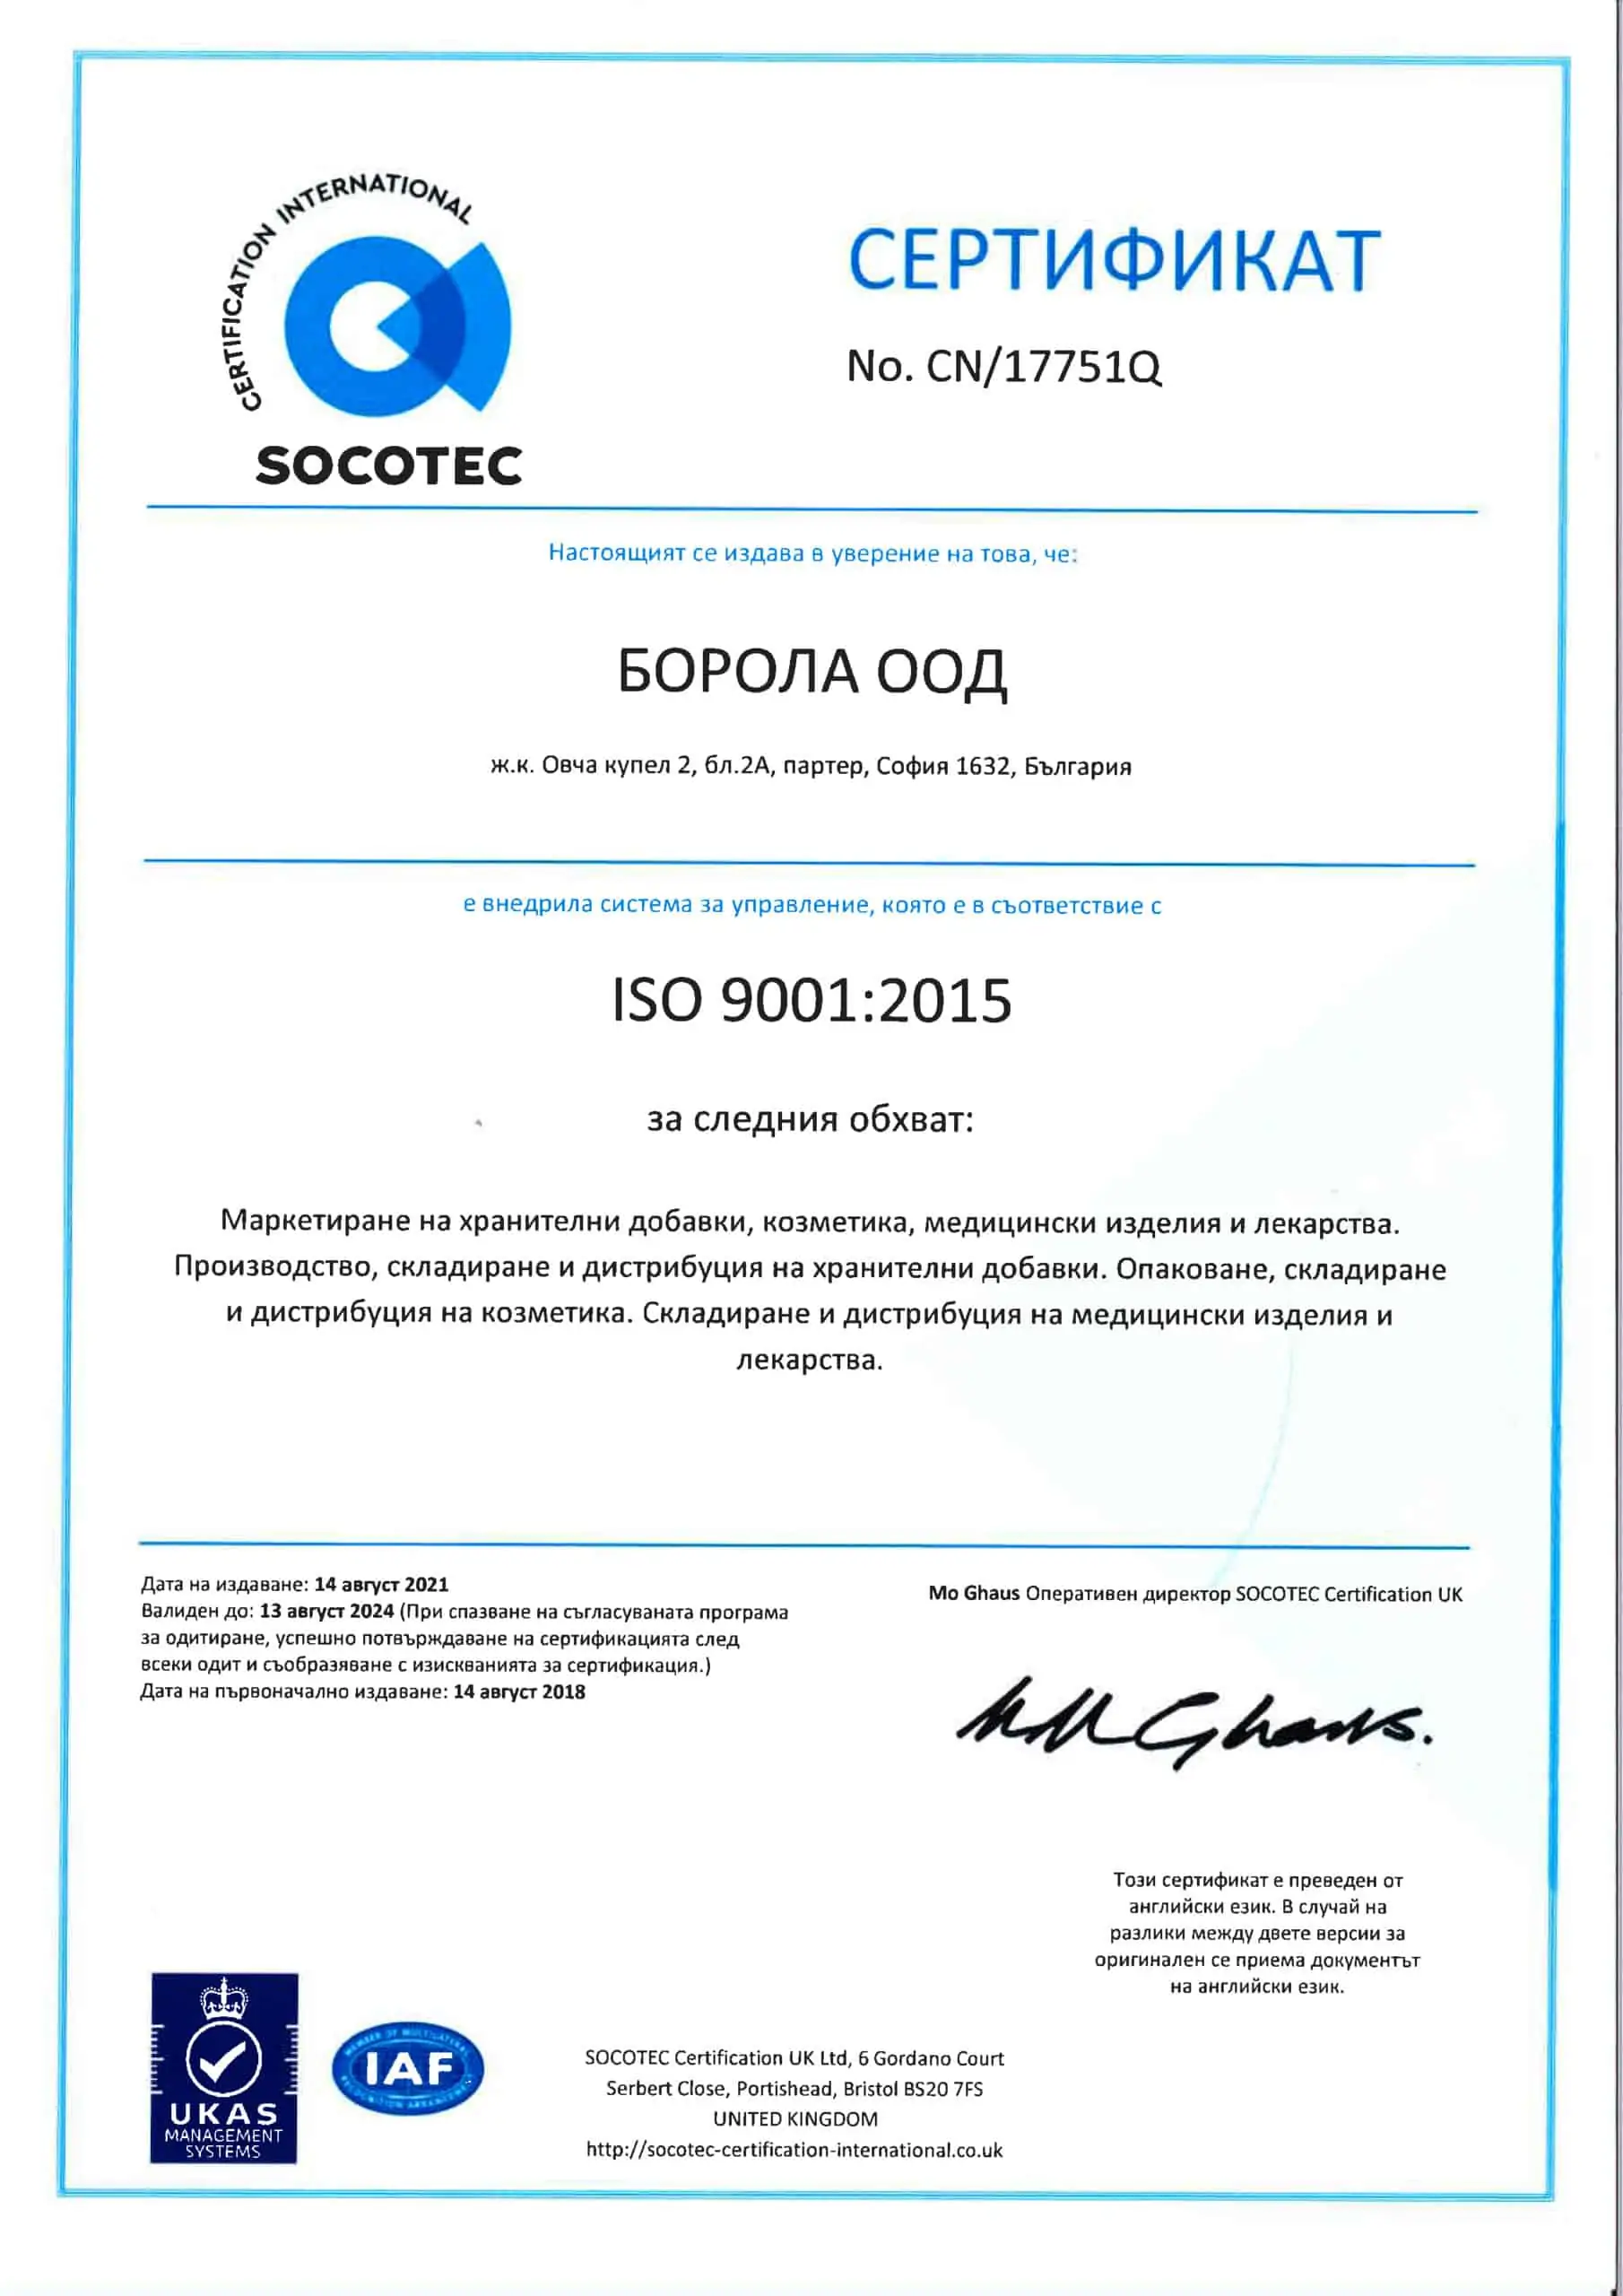 Сертификат ISO 9001 : 2015